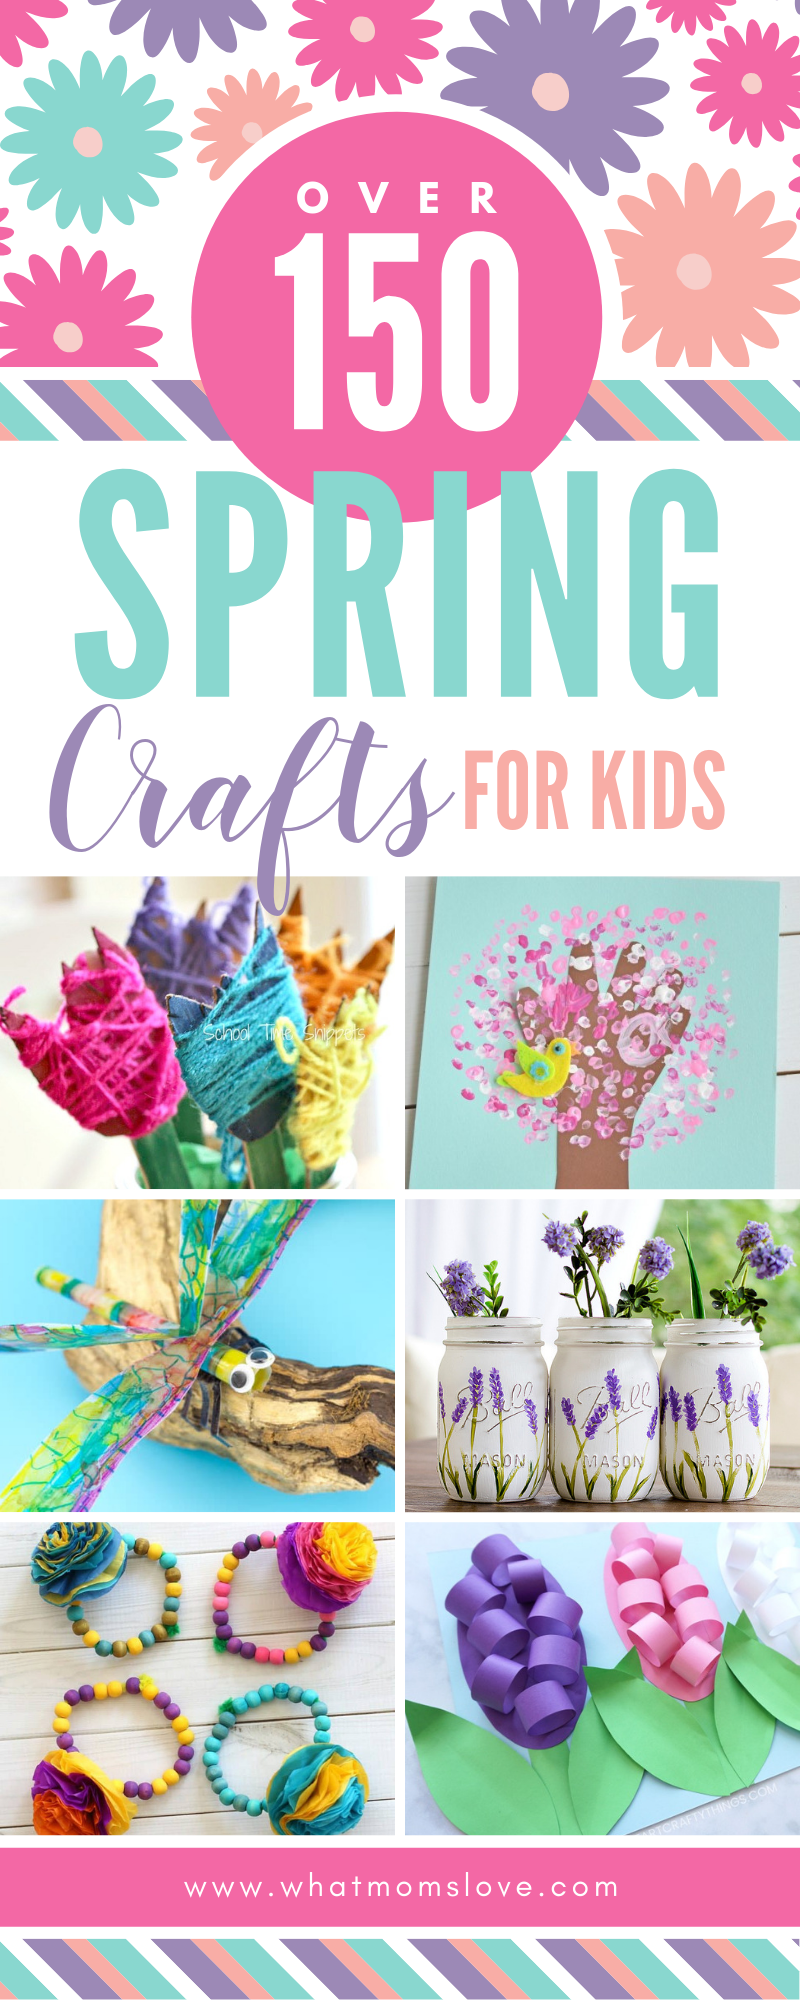 19 simple crafts kindergarten ideas